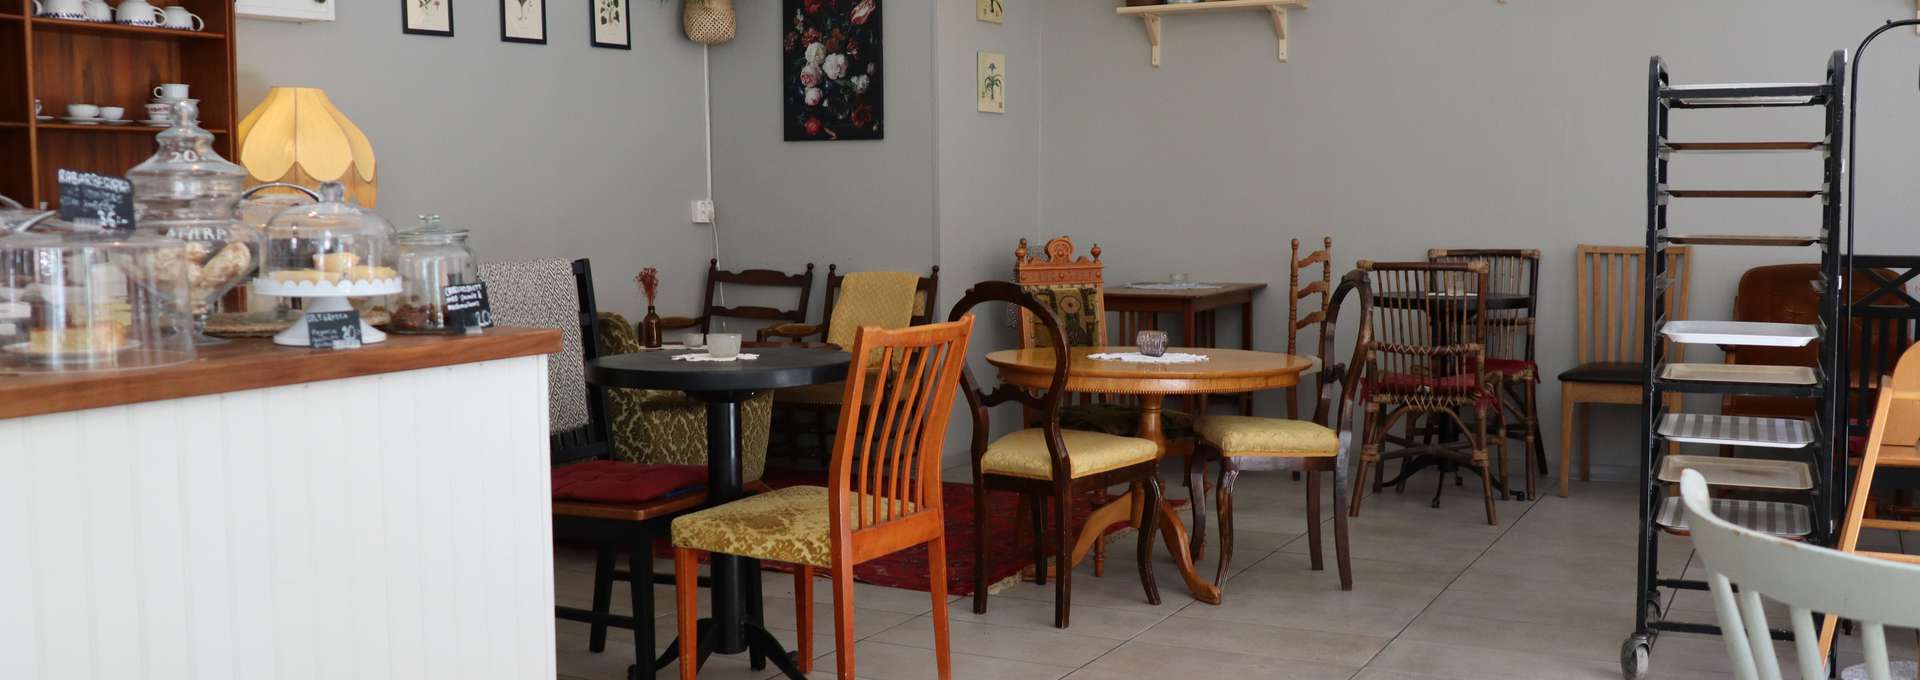 Insidan av ett café. Bord och stolar samt en bardisk syns